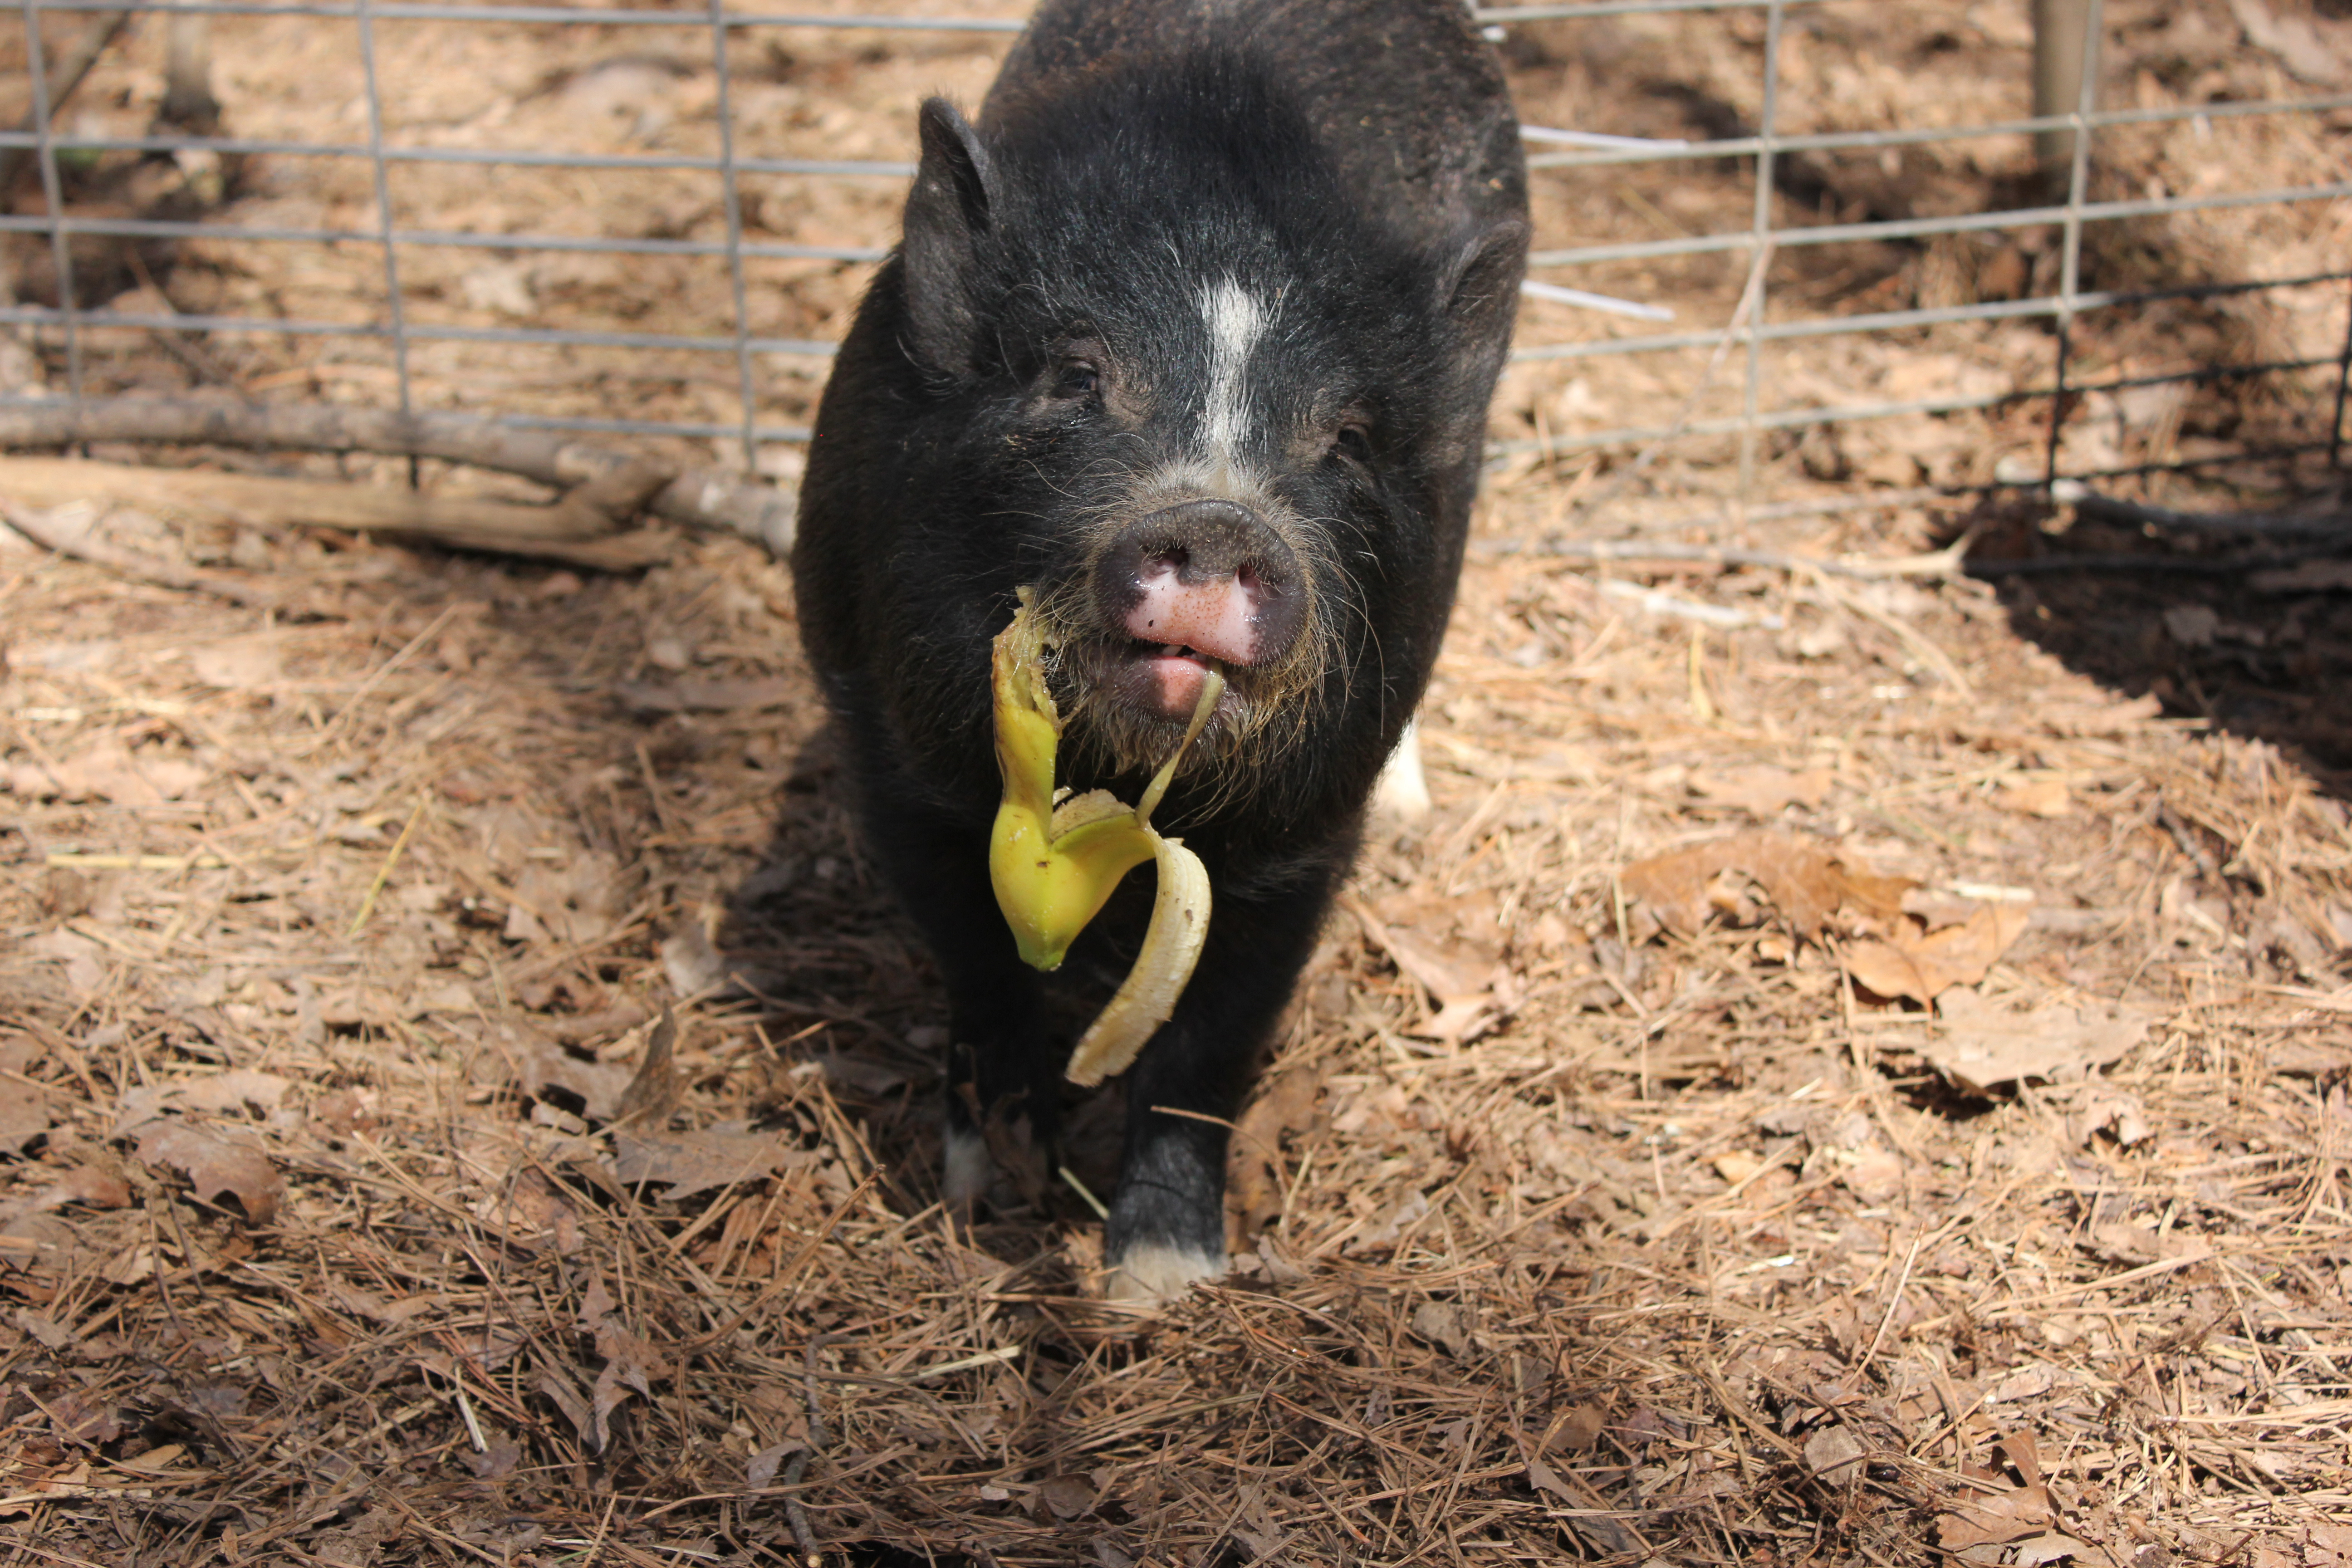 young pig eating a banana